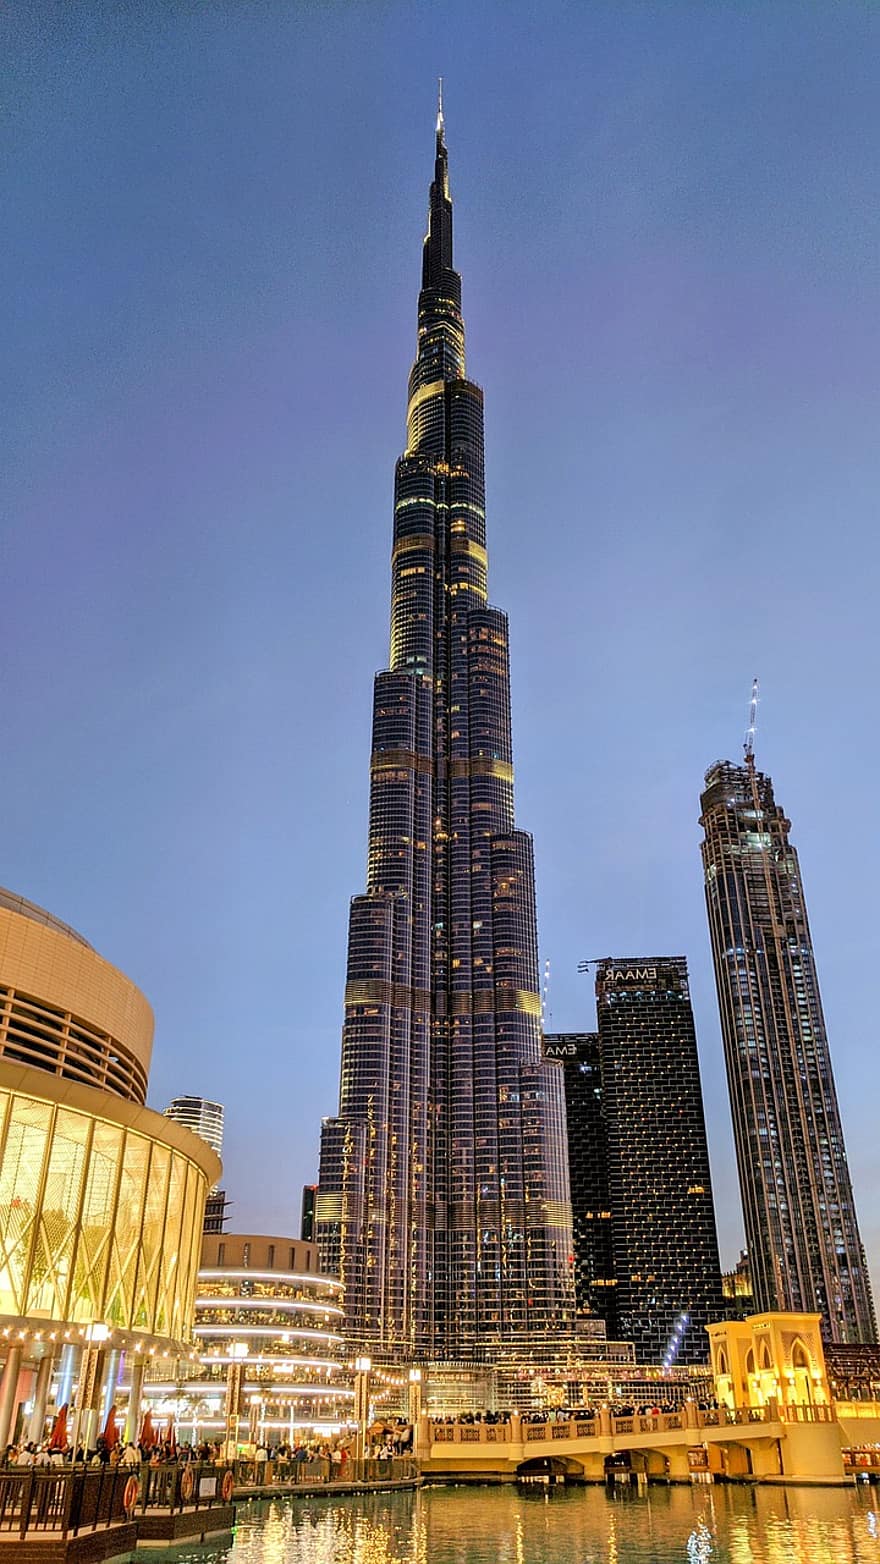 oraș, călătorie, Dubai, turism, clădiri, arhitectură, Burj Khalifa, burj dubai, Emiratele Uae, zgârie-nori, dubai mall